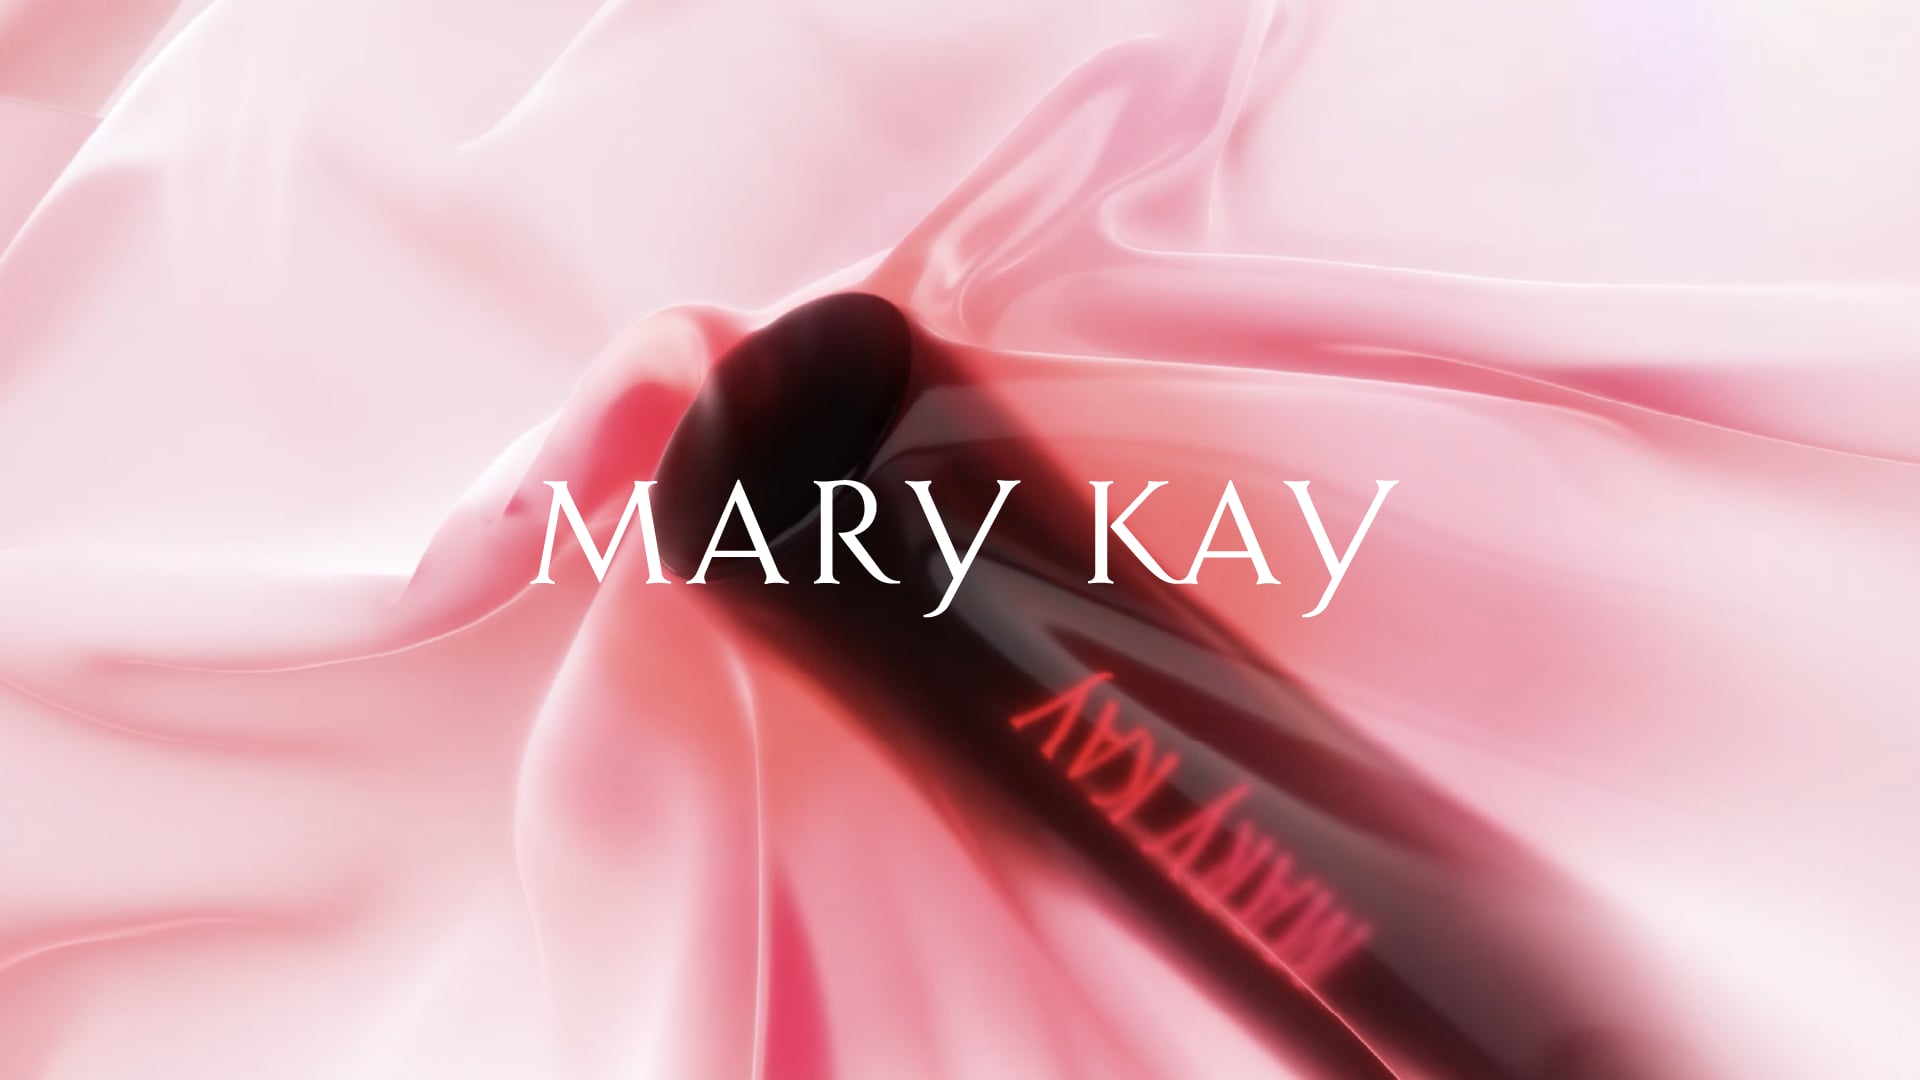 Promo video | MARY KAY PhaseIII